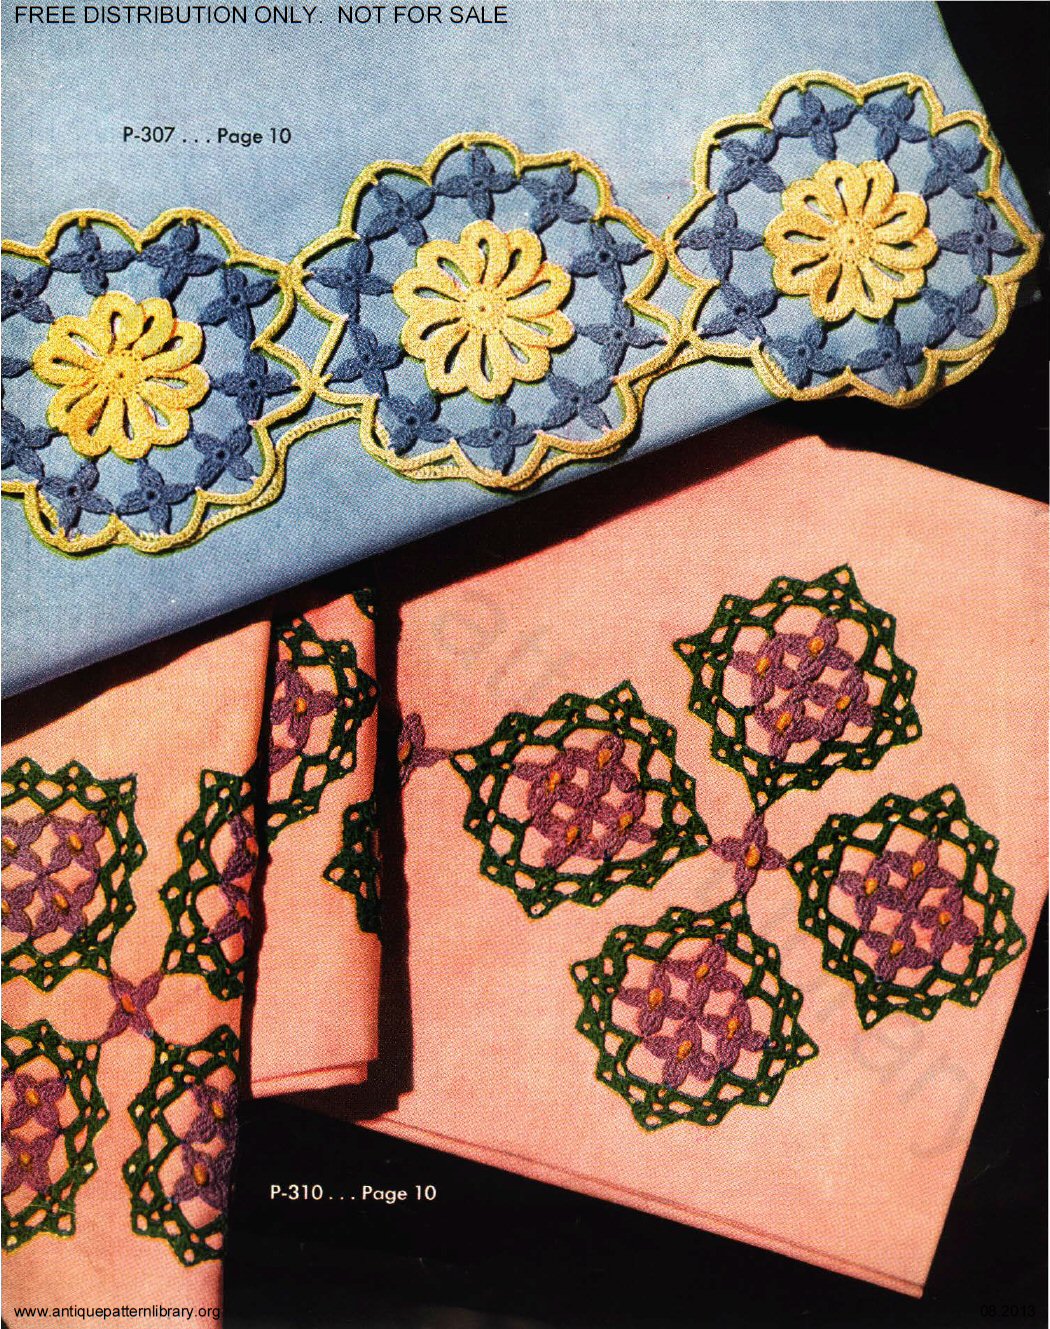 6-TA004 Clark's O.N.T. J&P Coats Pillow Cases Book No. 264 